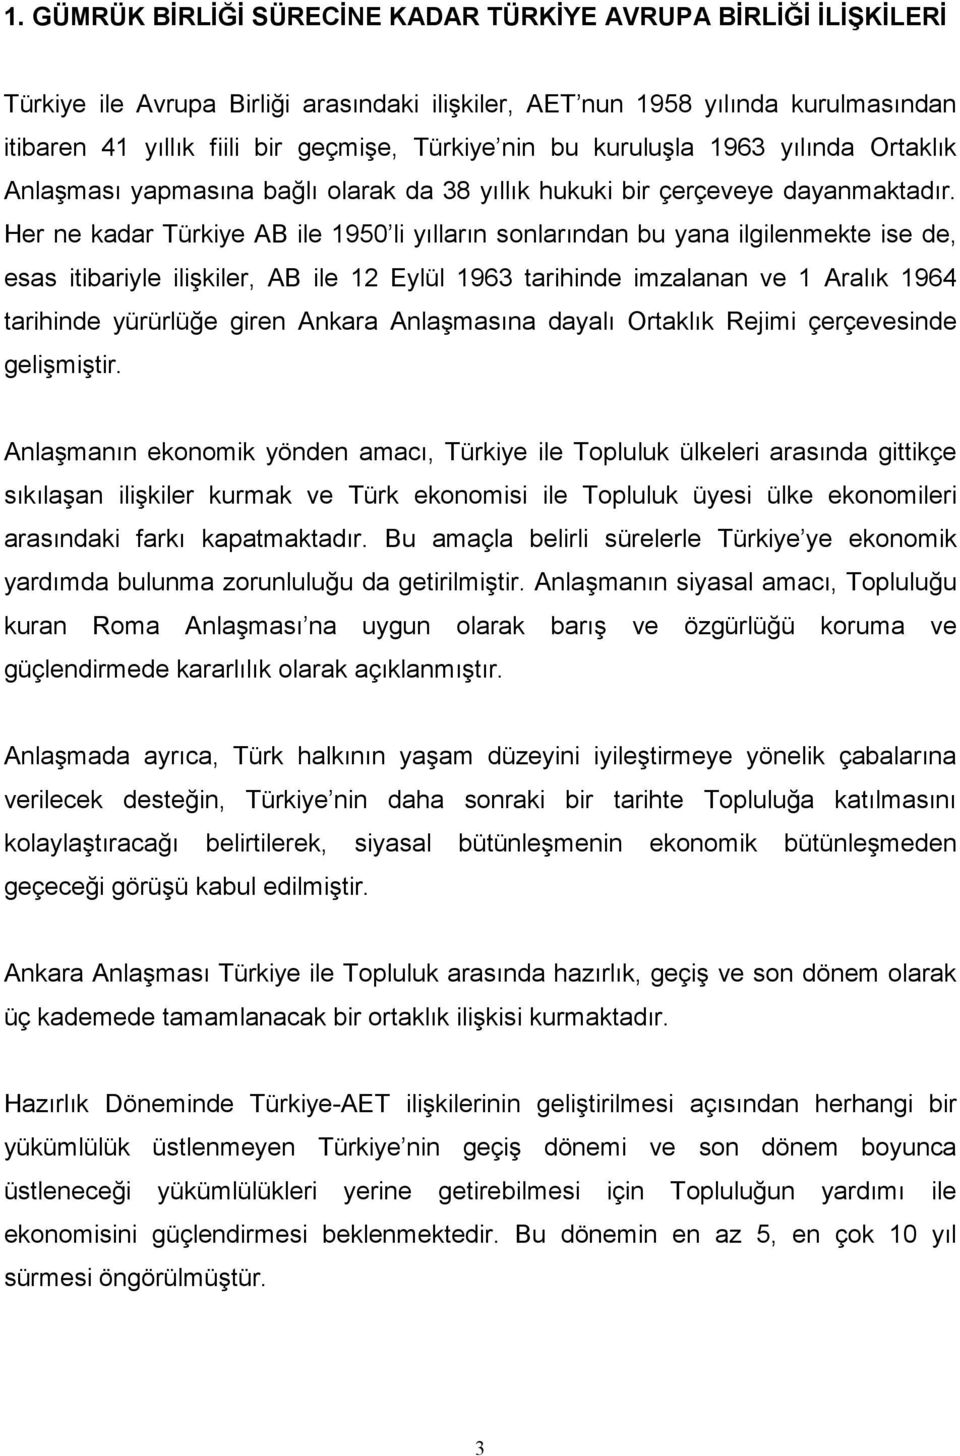 Her ne kadar Türkiye AB ile 1950 li yılların sonlarından bu yana ilgilenmekte ise de, esas itibariyle ilişkiler, AB ile 12 Eylül 1963 tarihinde imzalanan ve 1 Aralık 1964 tarihinde yürürlüğe giren